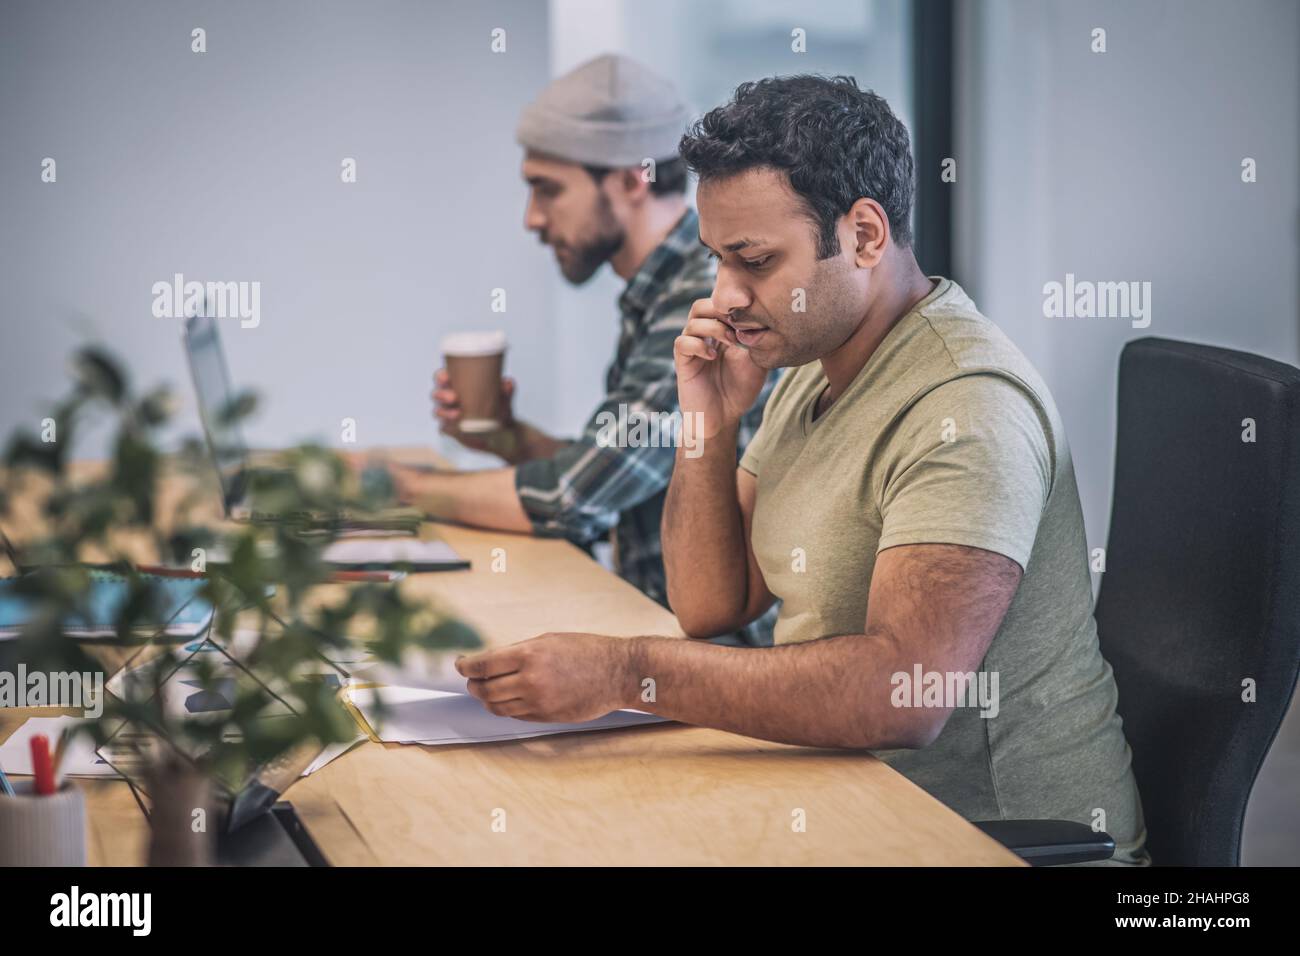 Deux personnes avec un ordinateur portable et un smartphone travaillant au bureau Banque D'Images